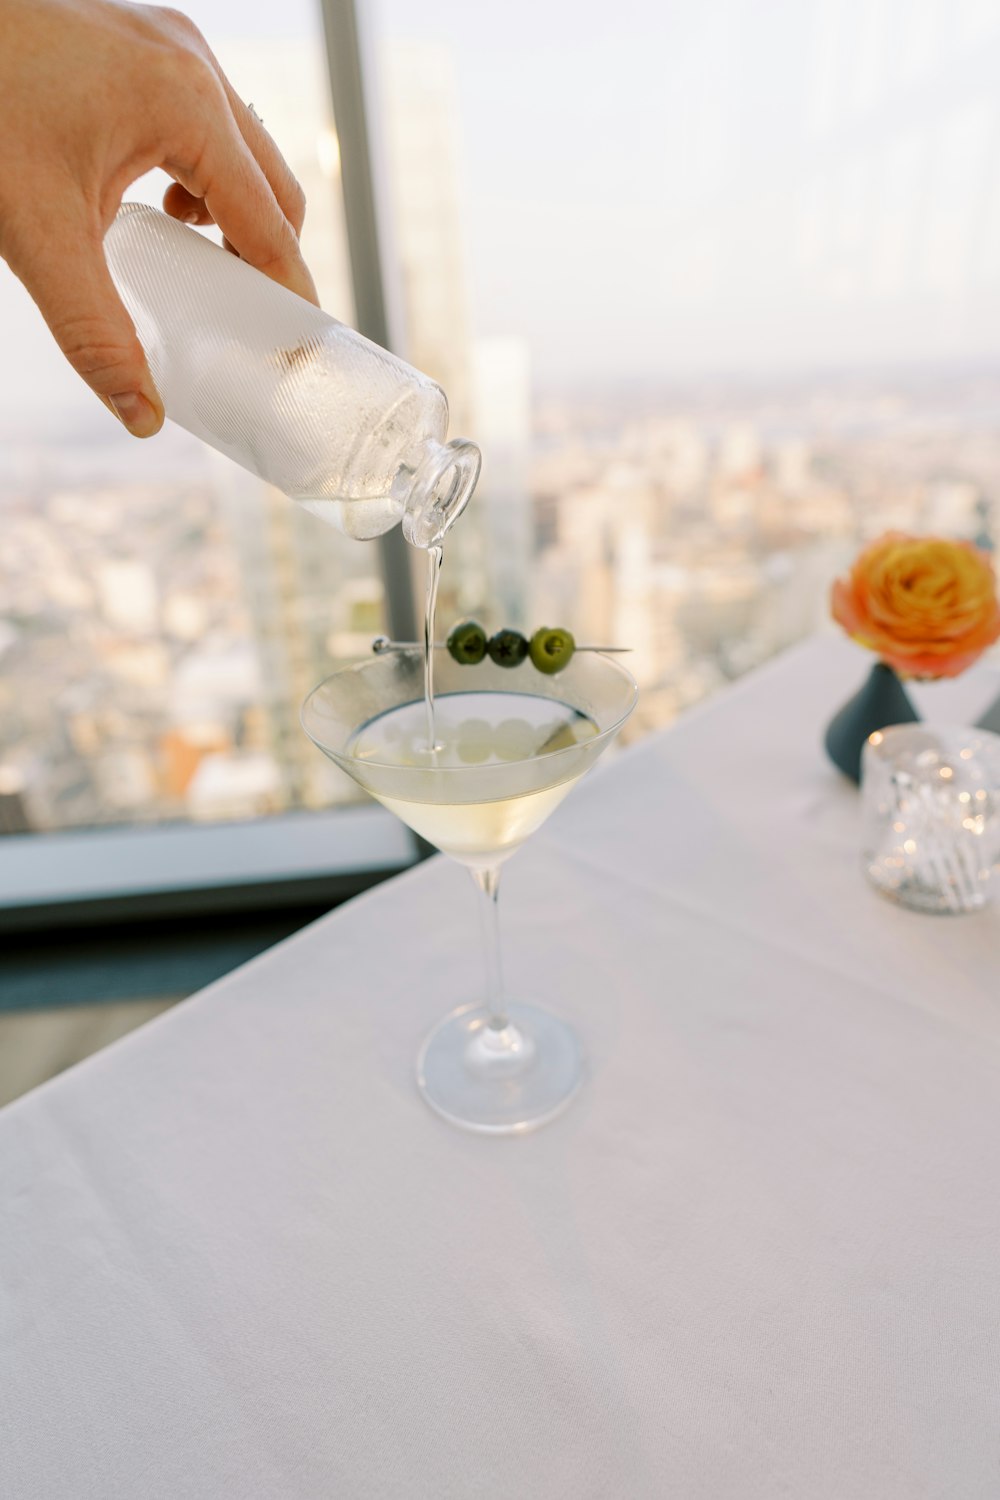 Una persona sirve una bebida en una copa de martini